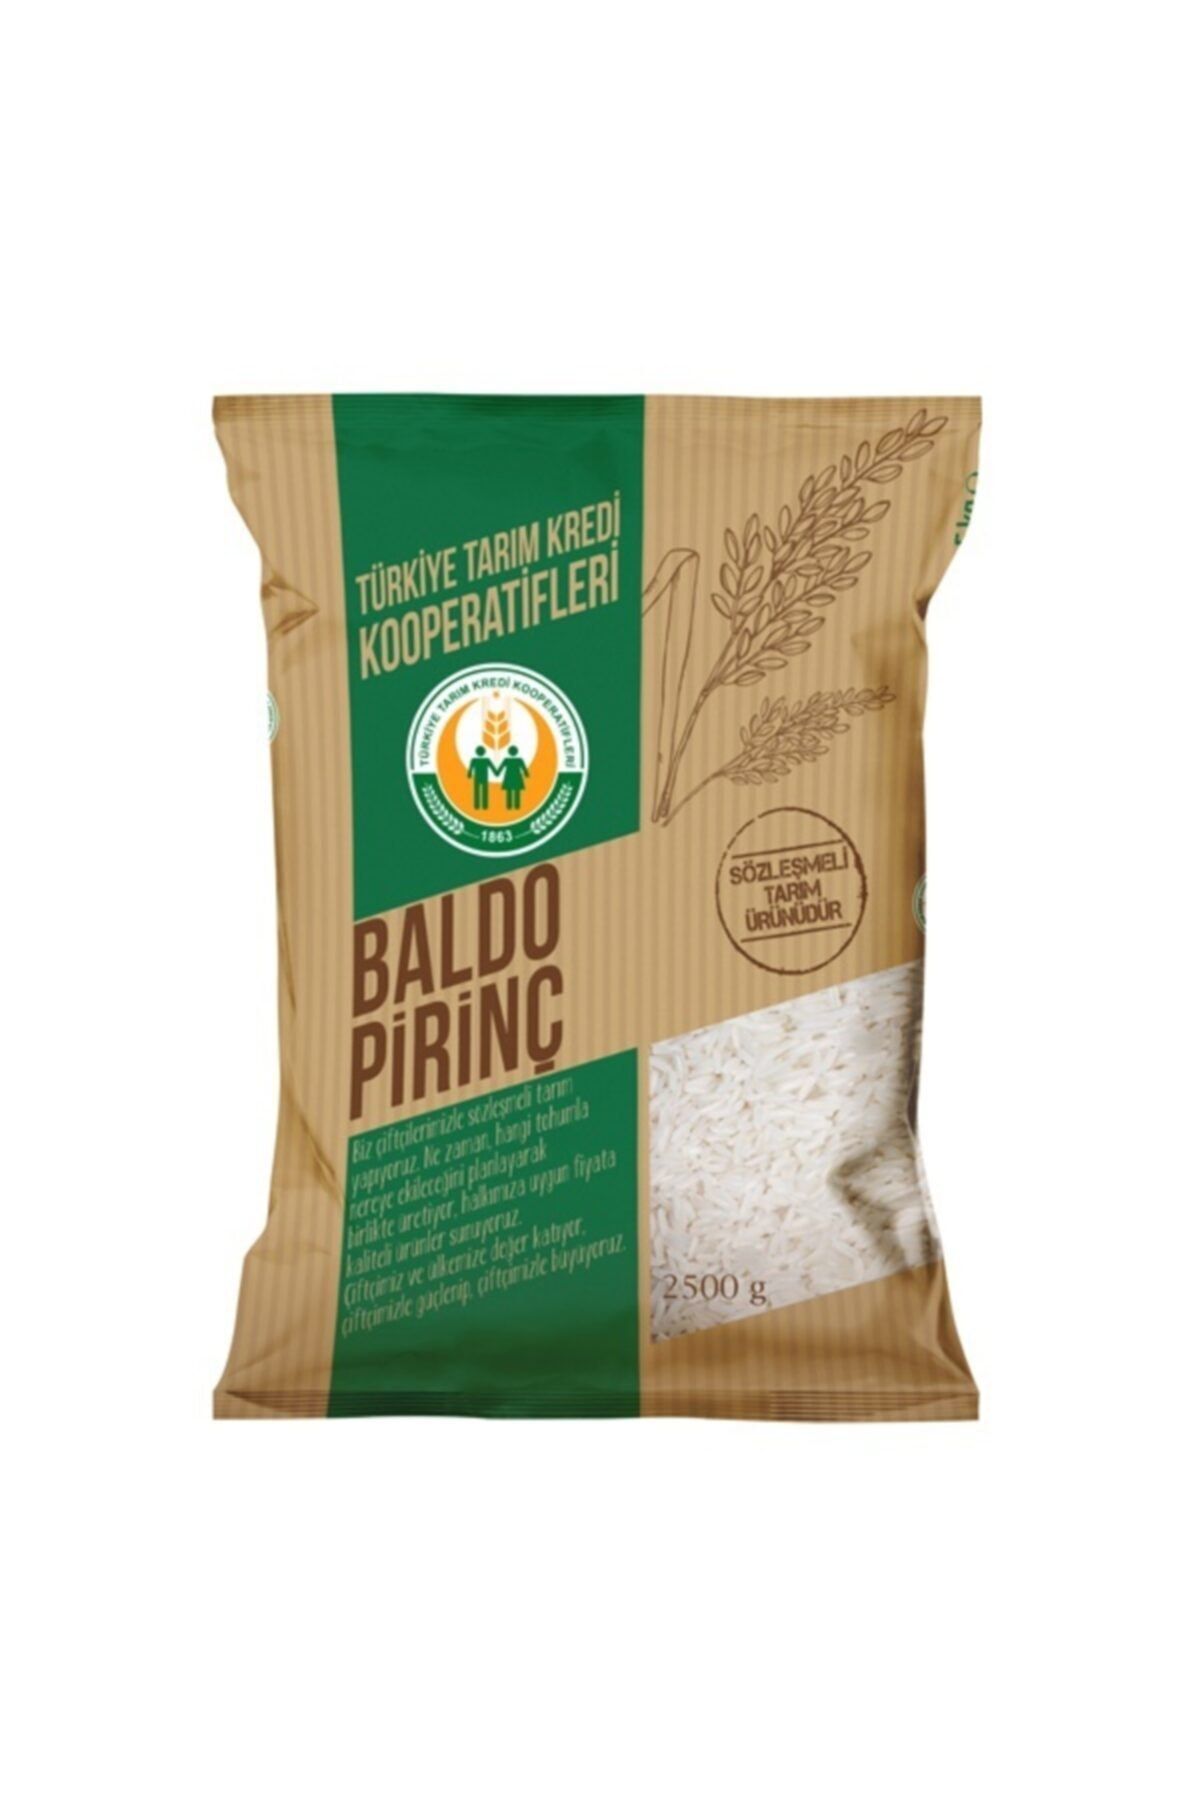 Genel Markalar Tarım Kredi Baldo Pirinç 2,5 Kg